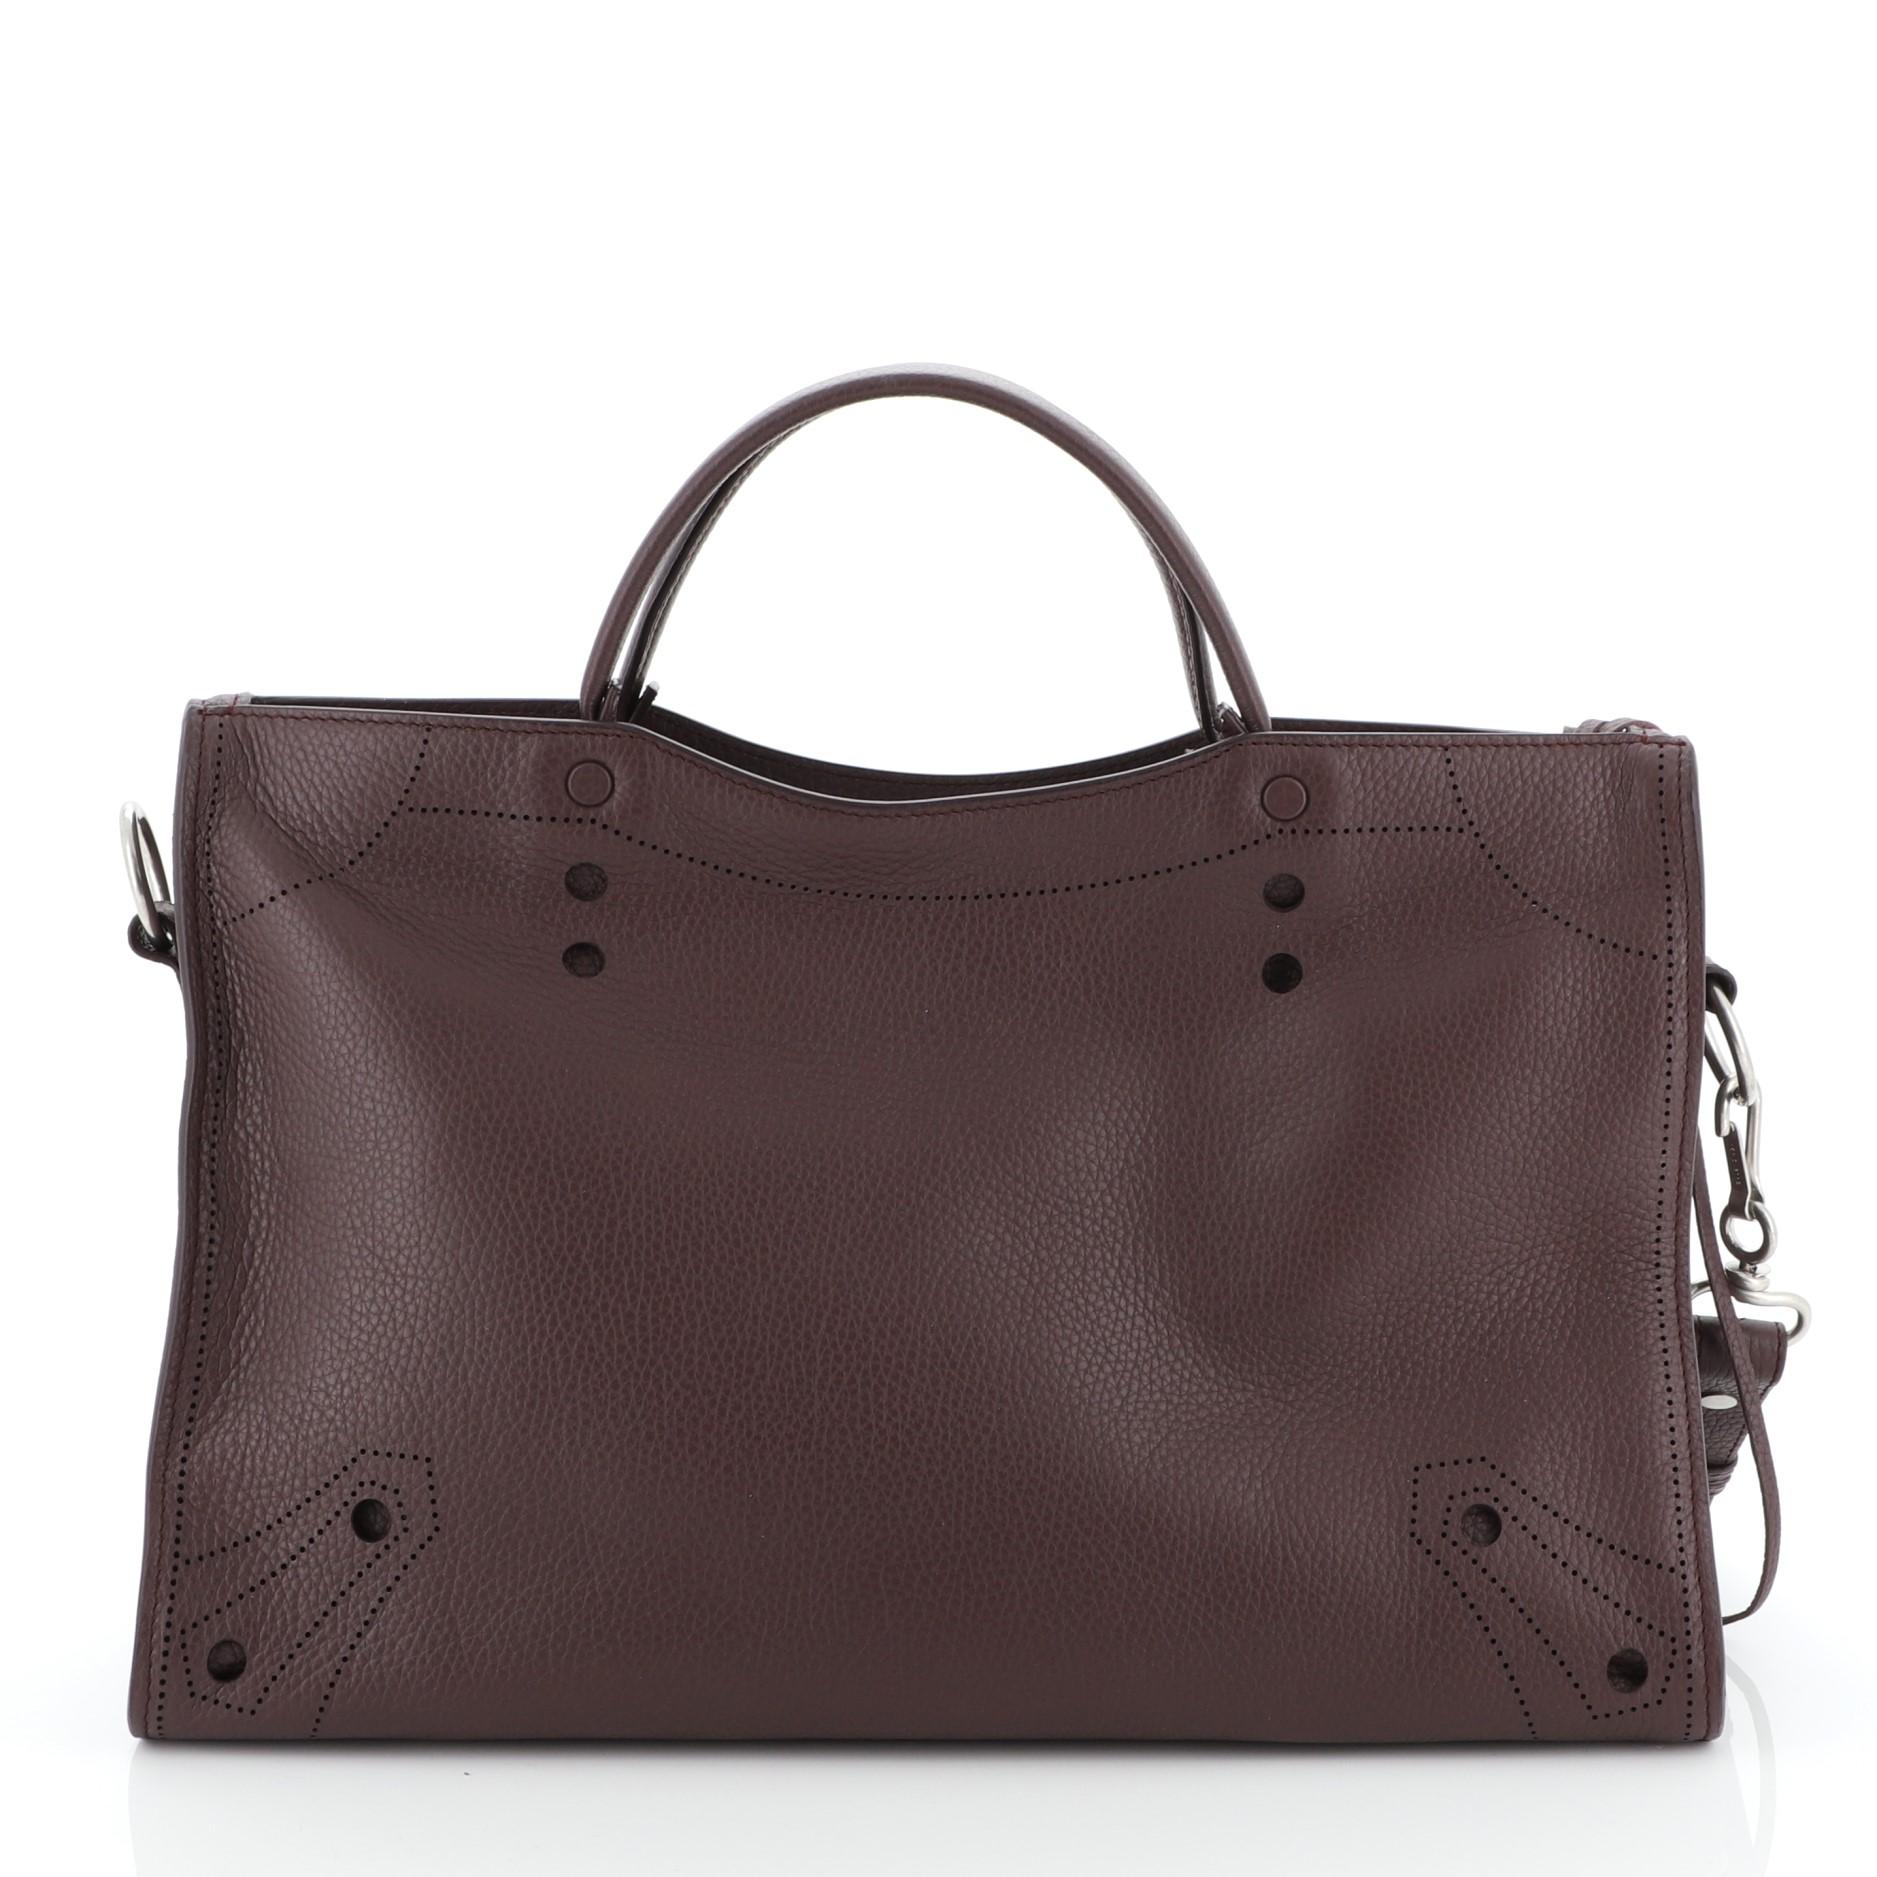 Women's or Men's Balenciaga Blackout City Bag Leather Medium